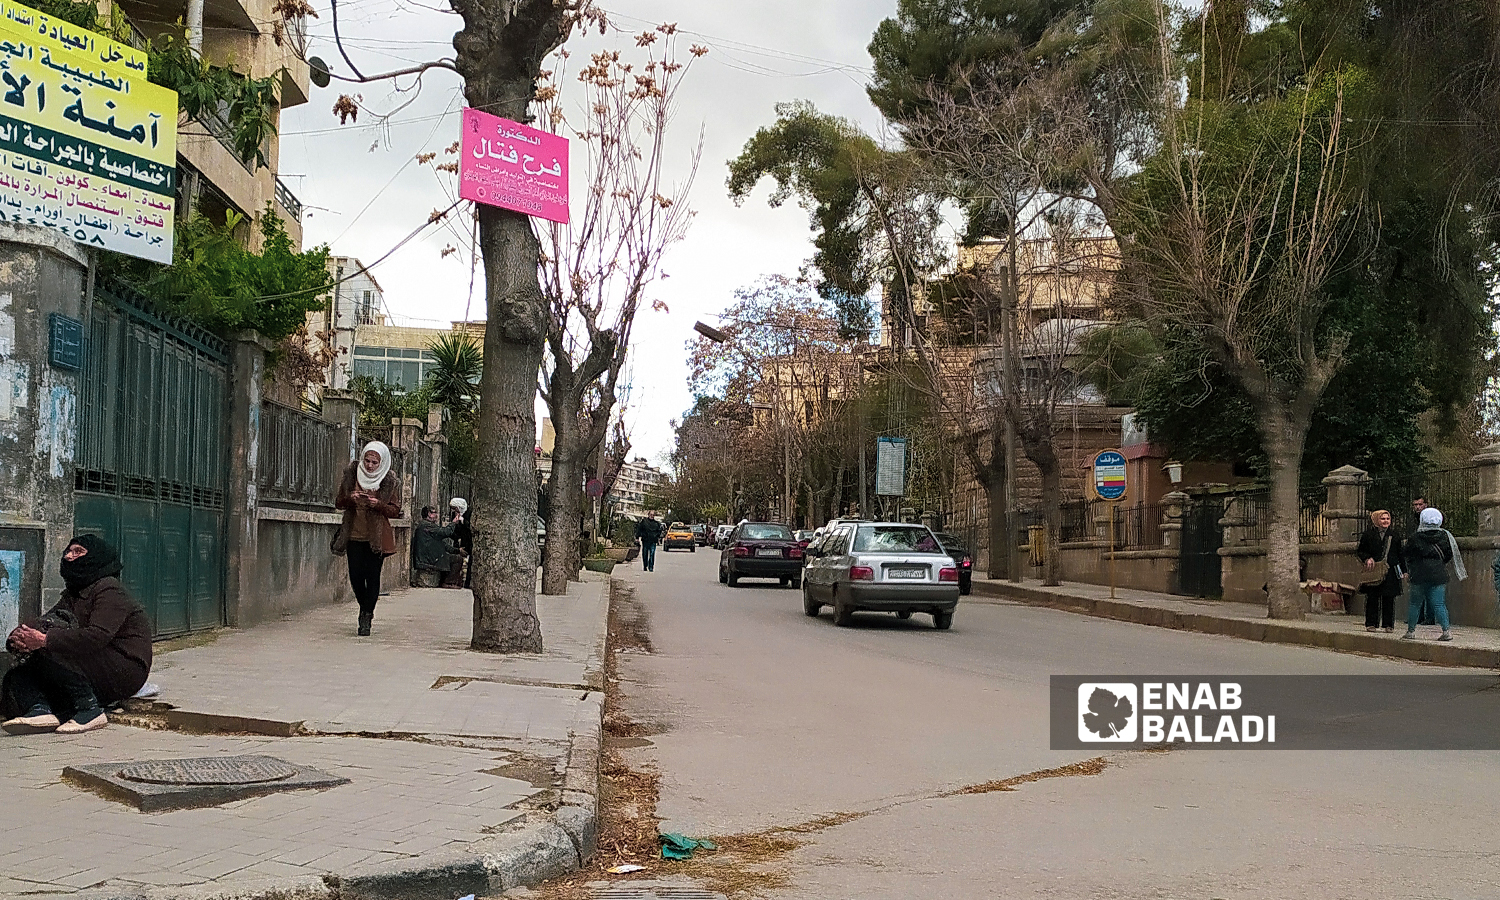 A street near Aleppo